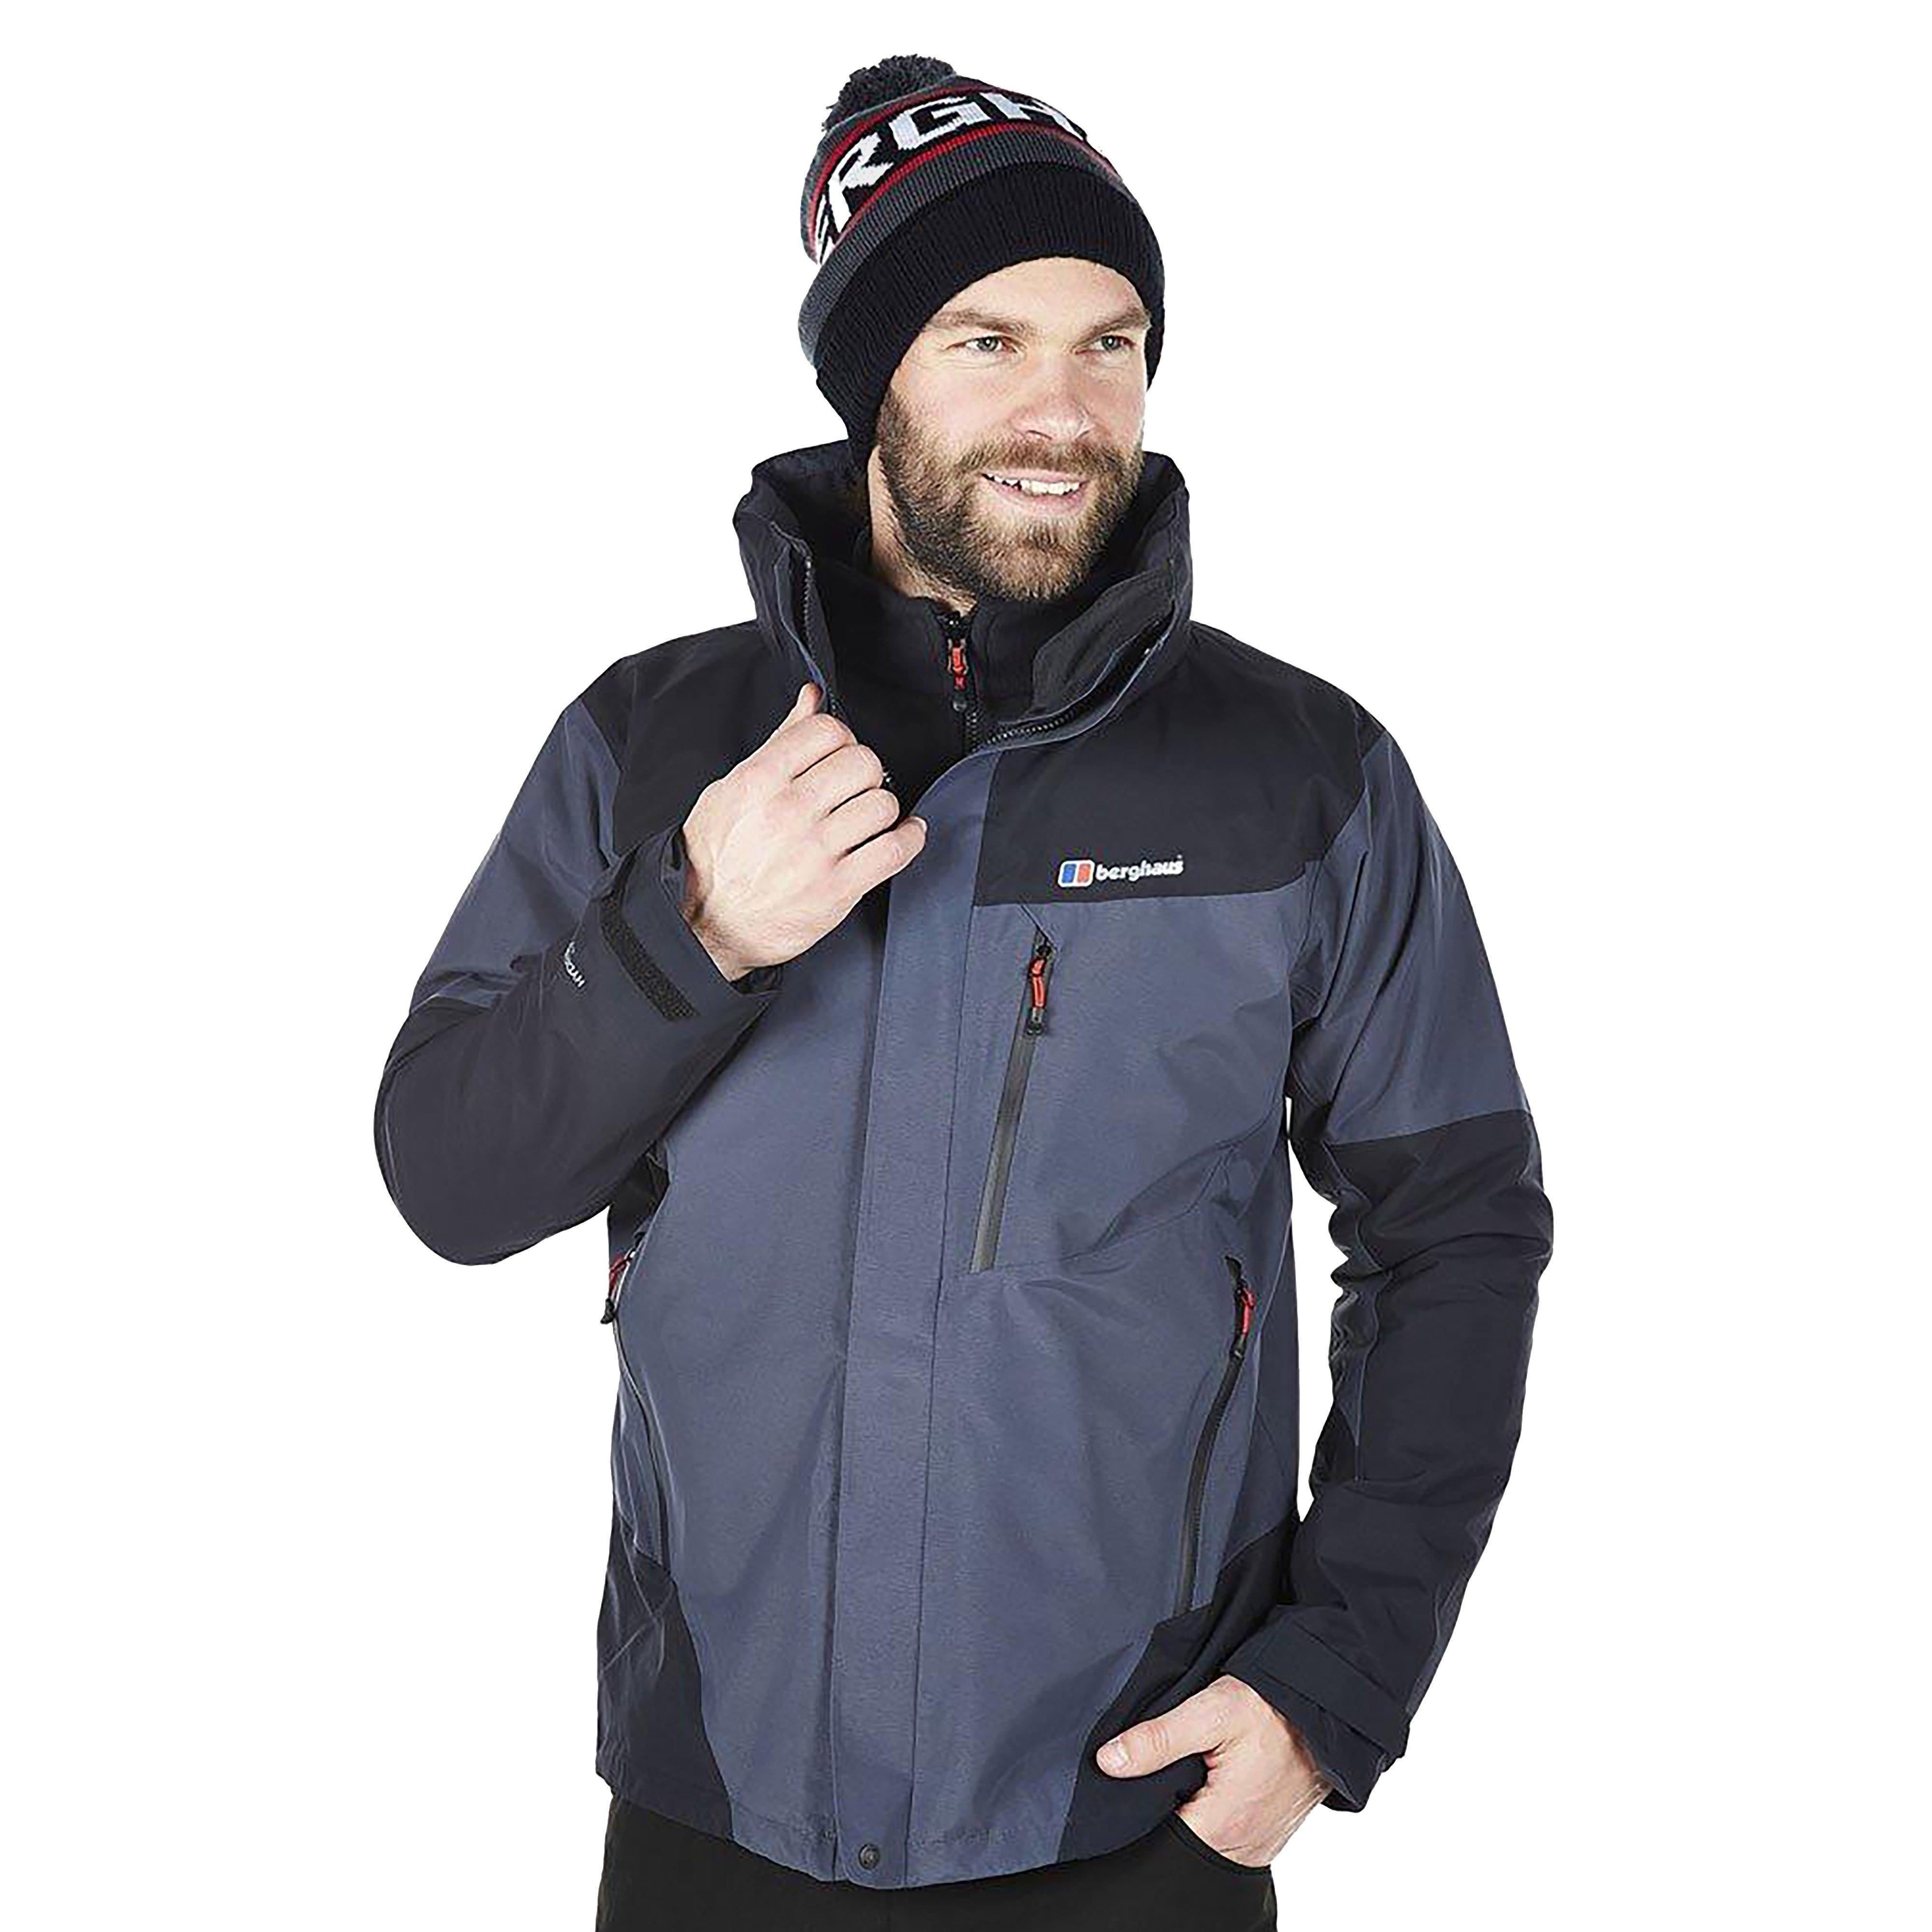 Berghaus Men’s Versatile Arran 3 in 1 Jacket with Adjustable Rollaway Hood